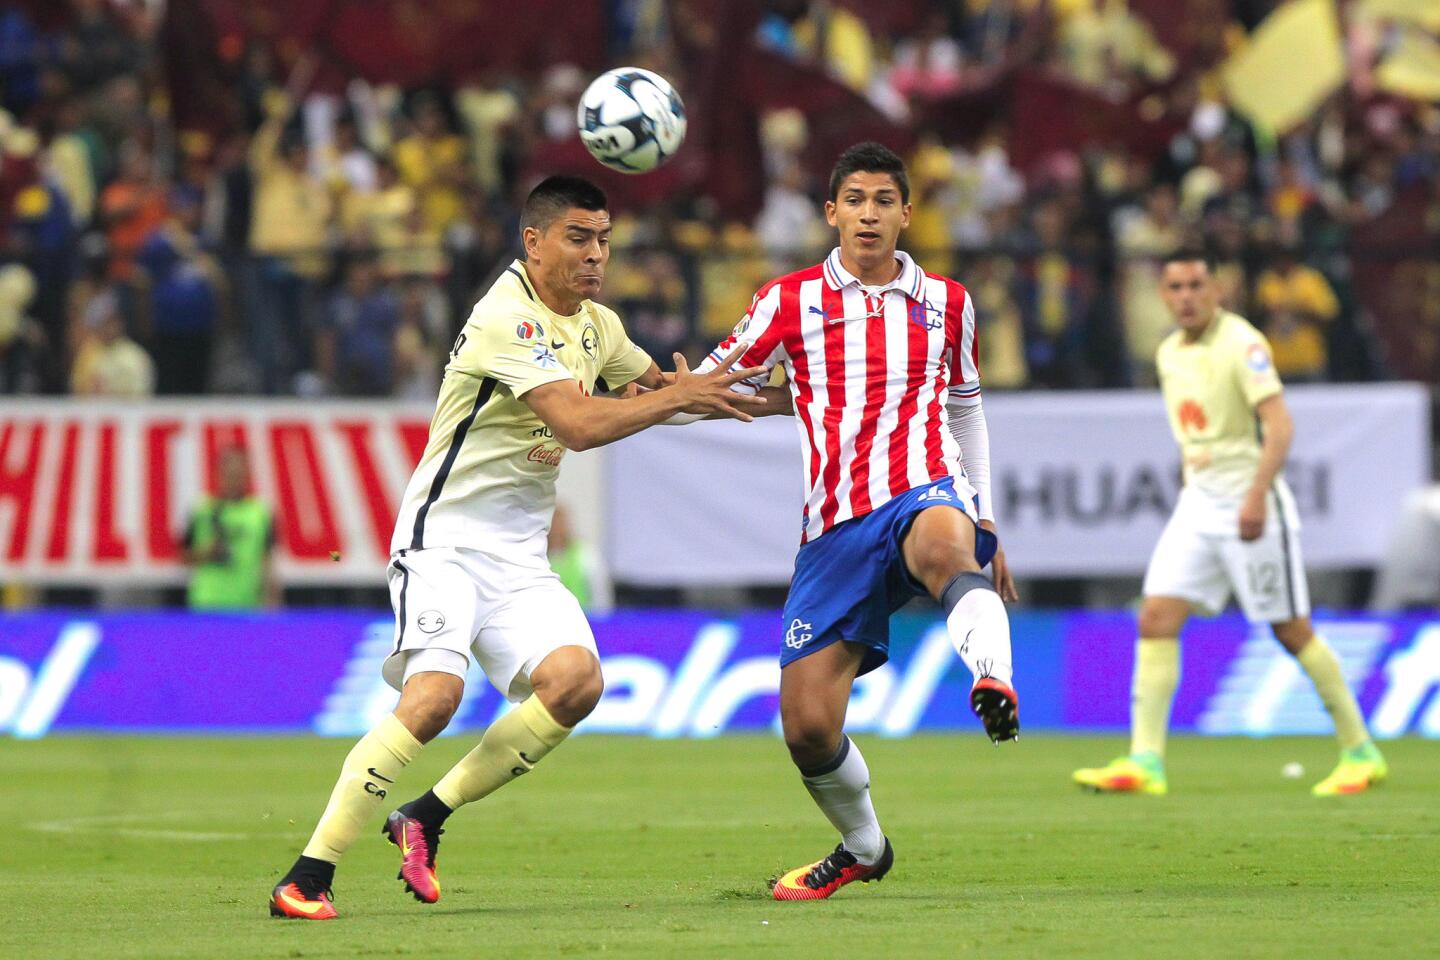 Paolo Goltz (i) de América disputa el balón con Ángel Saldivar (d) de Chivas, en juego correspondiente a la jornada 7 del torneo mexicano de futbol celebrado en el estadio Azteca en Ciudad de México.